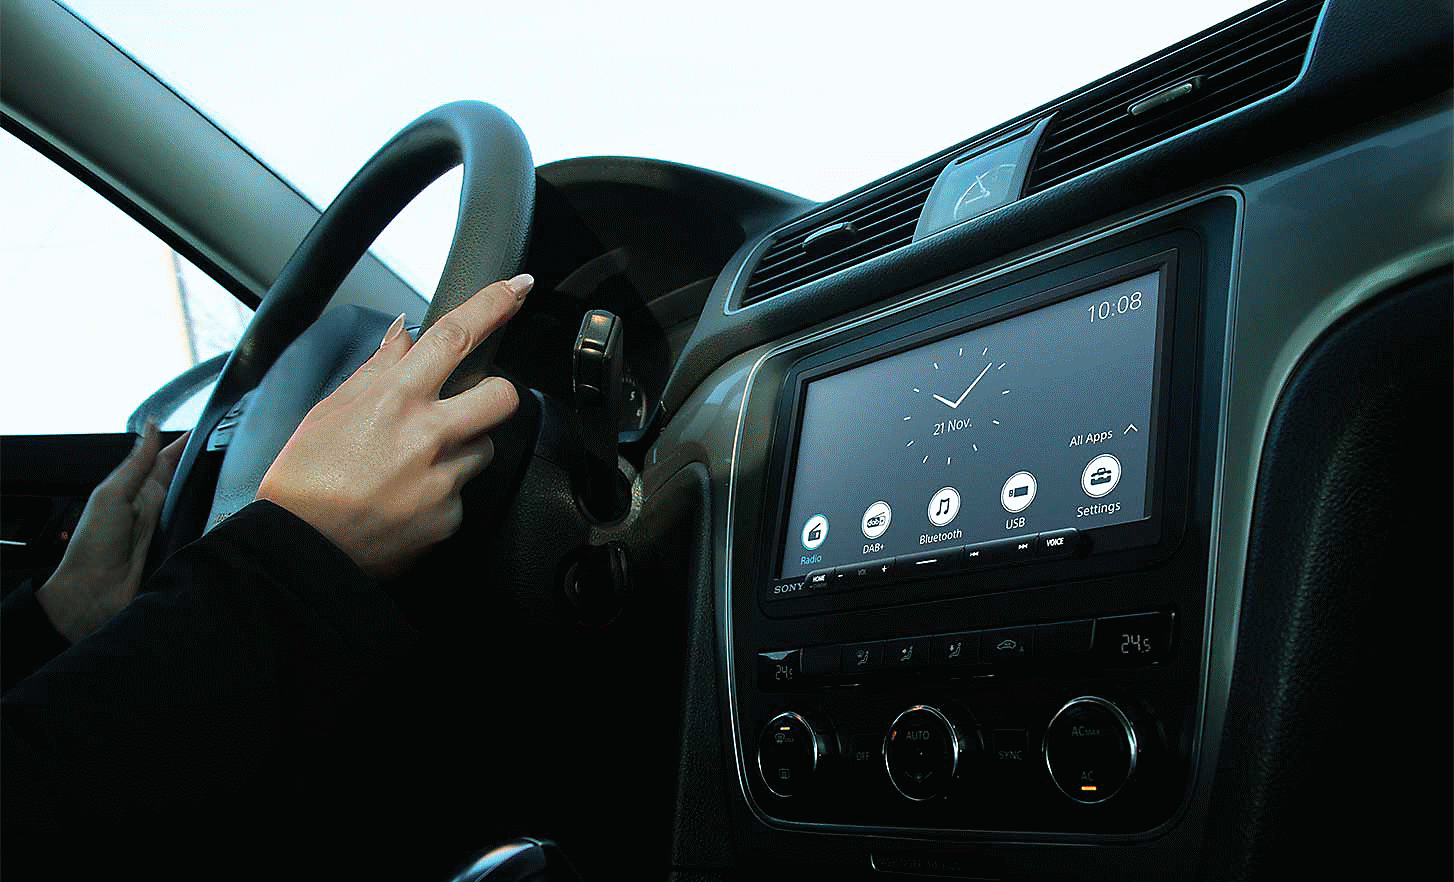 Slika XAV-AX4050 na armaturni plošči z uro in več gumbi na zaslonu